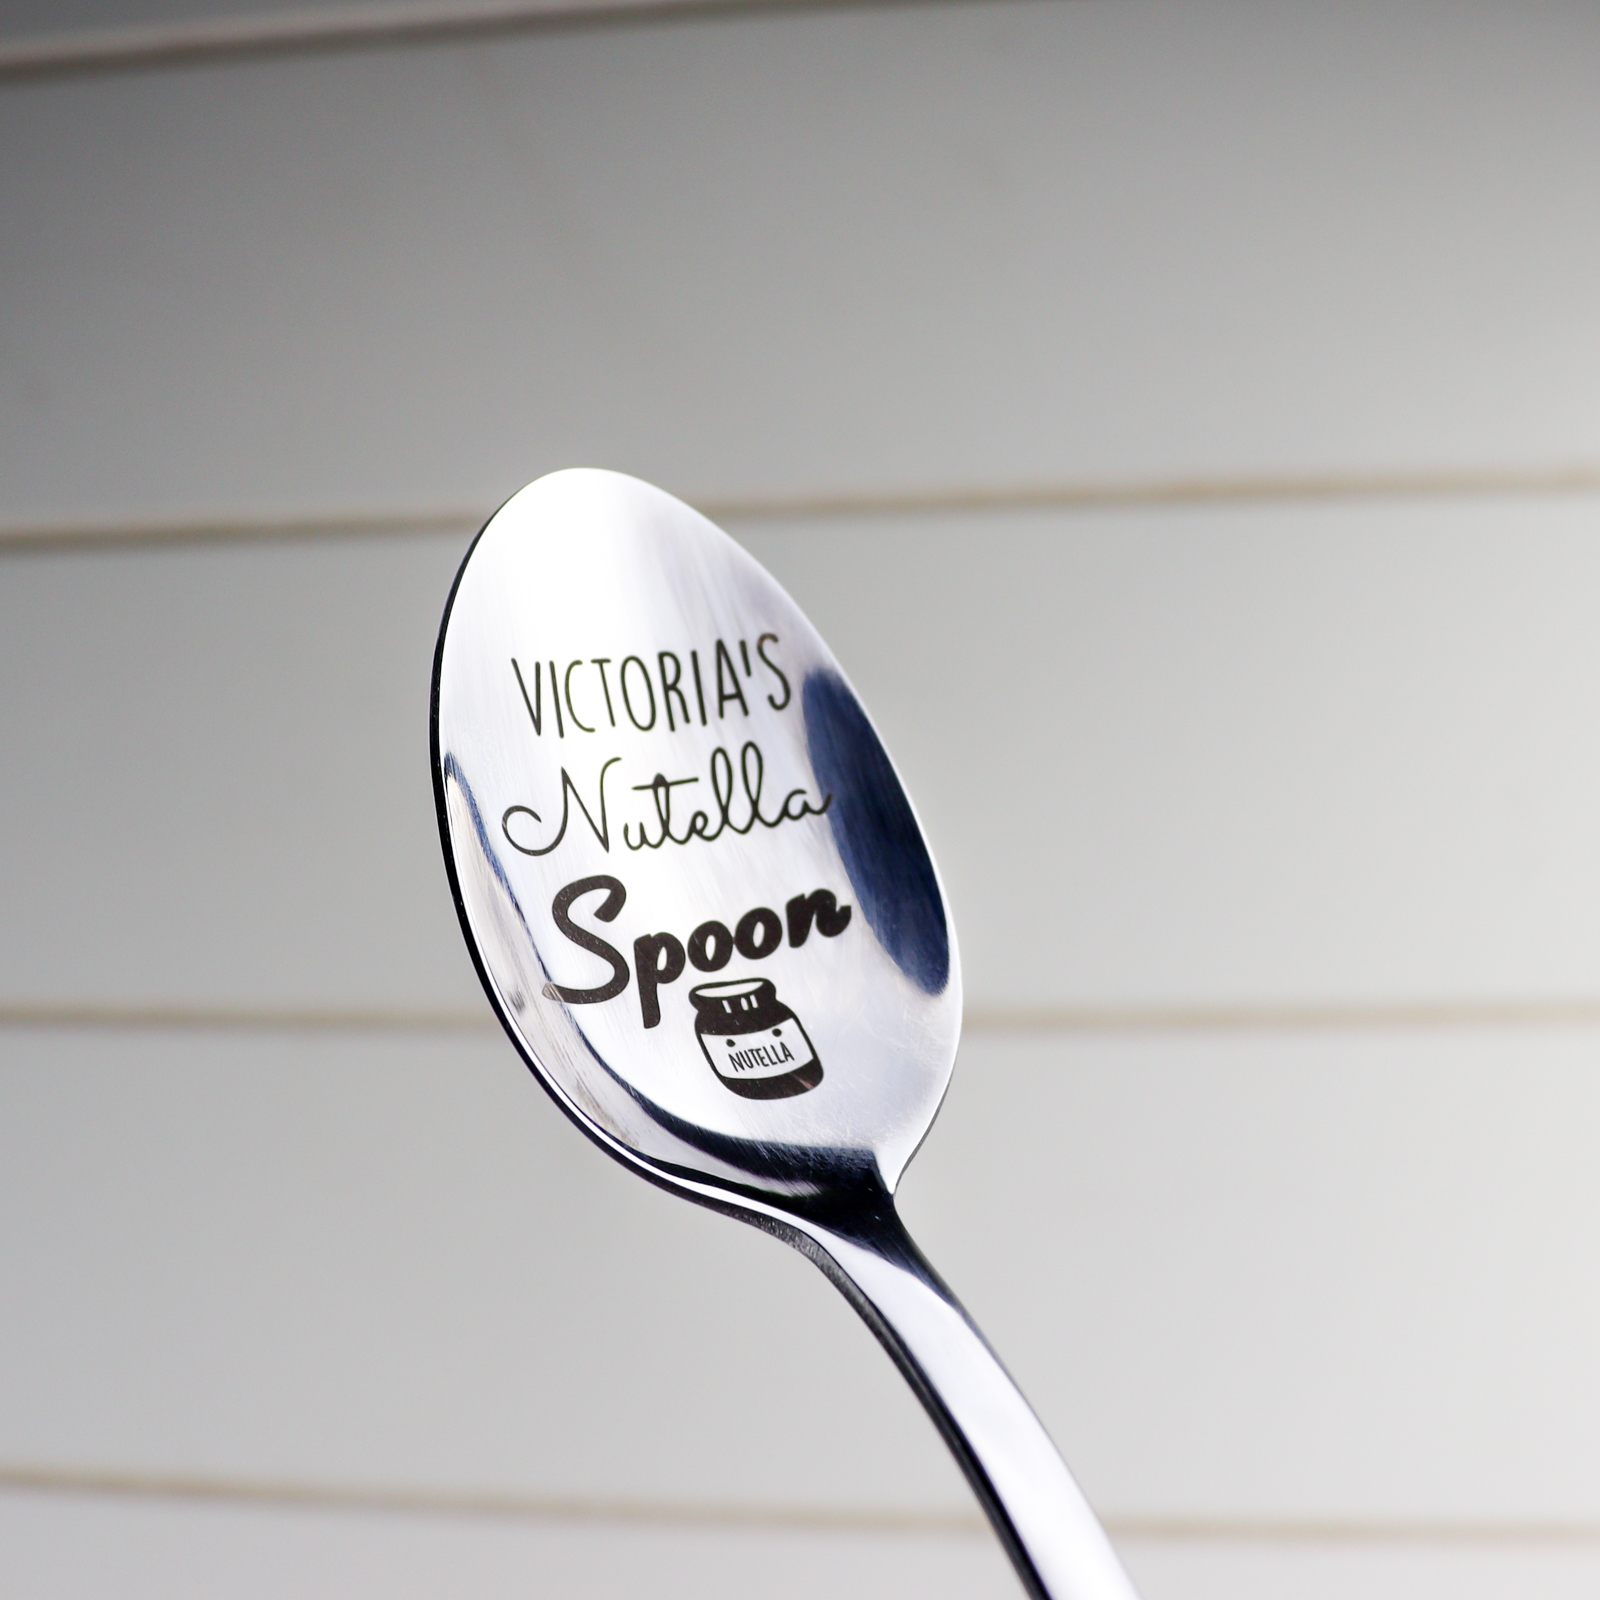 Personalised nutella spoon